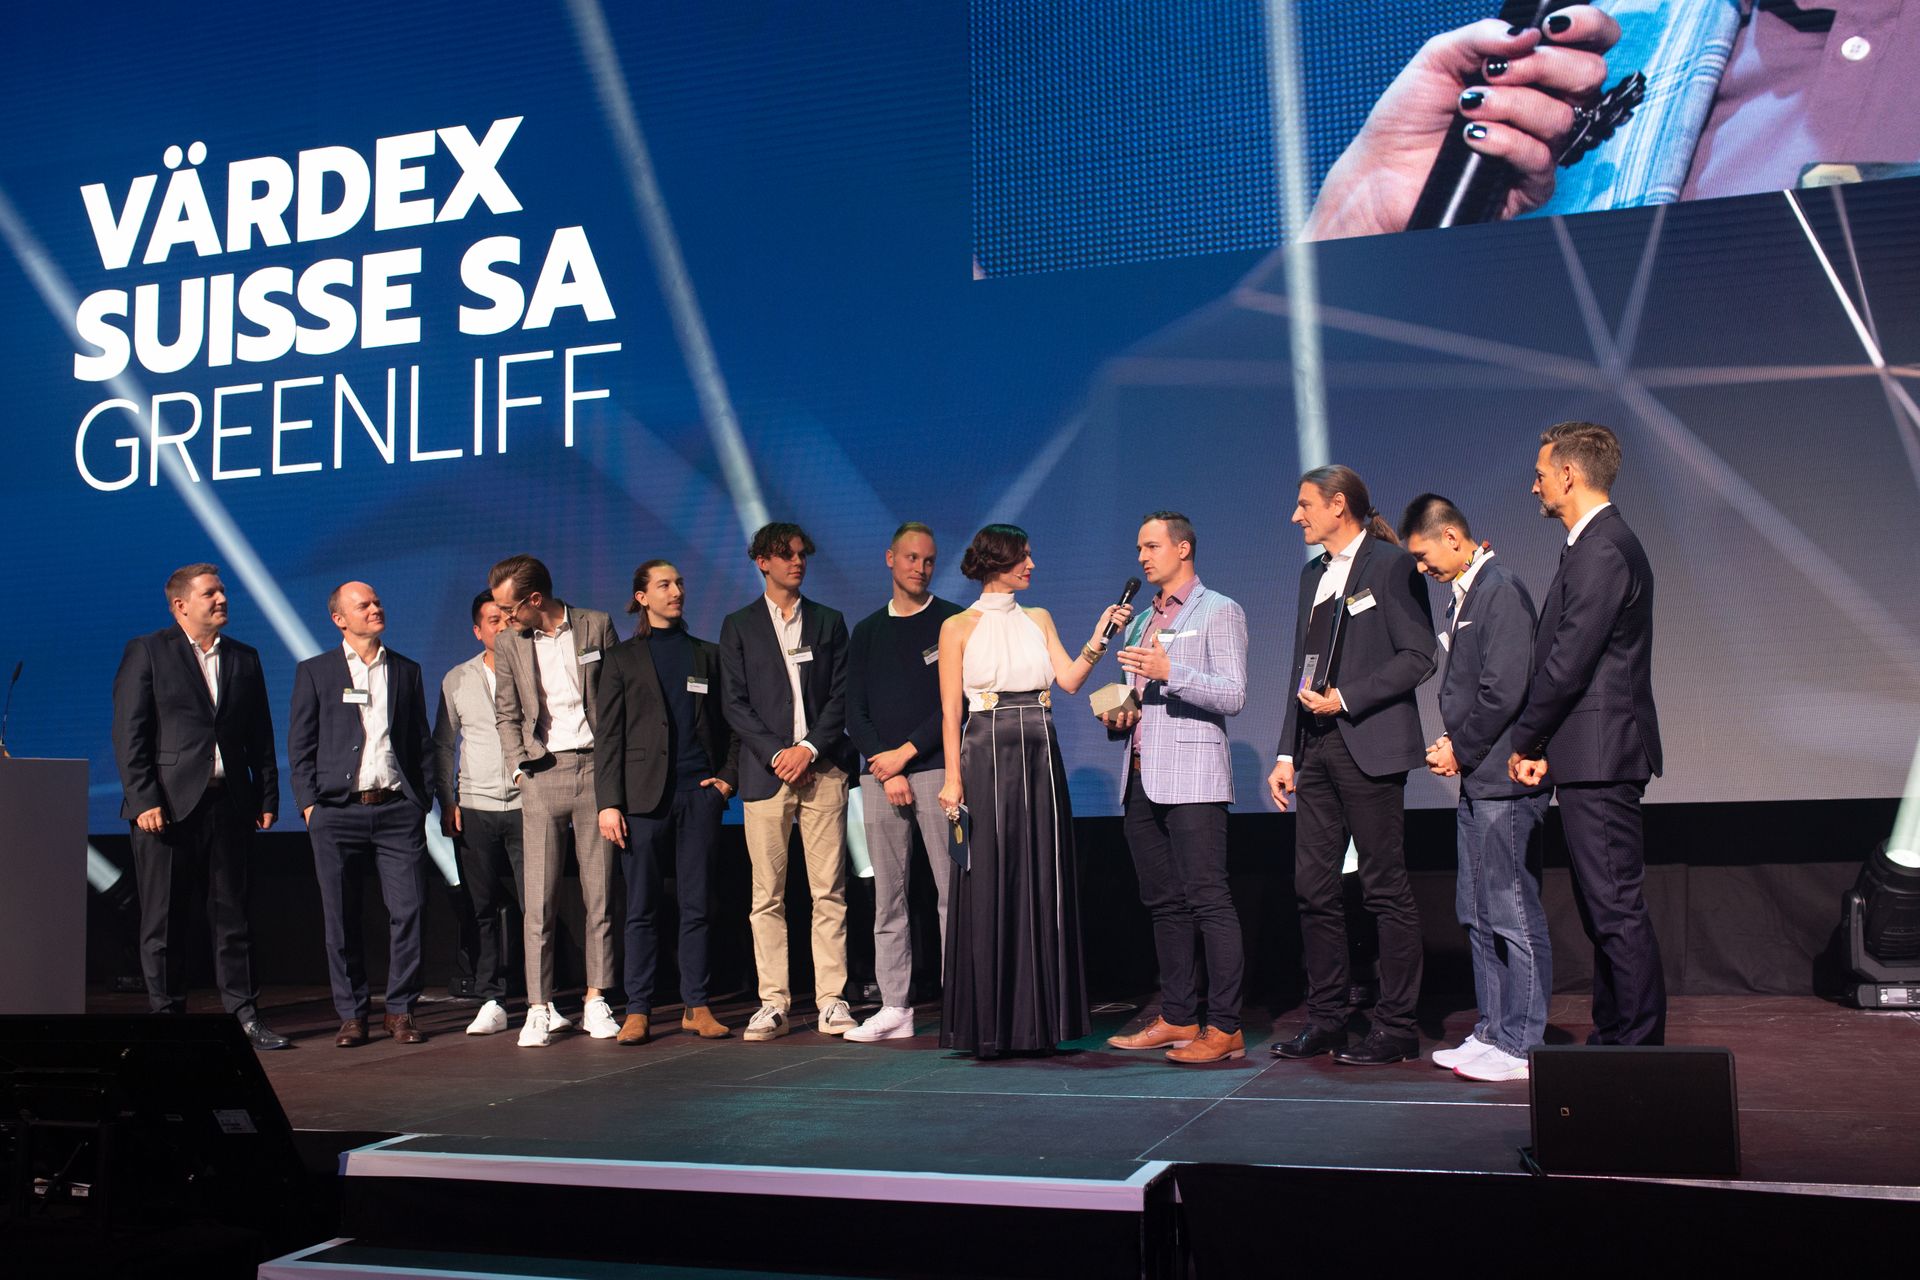 კომპანიები „Värdex Suisse“ და „Greenliff“ დაჯილდოვდნენ შვეიცარიის „Digital Economy Awards“-ზე ორი საუკეთესო „უმაღლესი ხარისხის“ პრემიით.